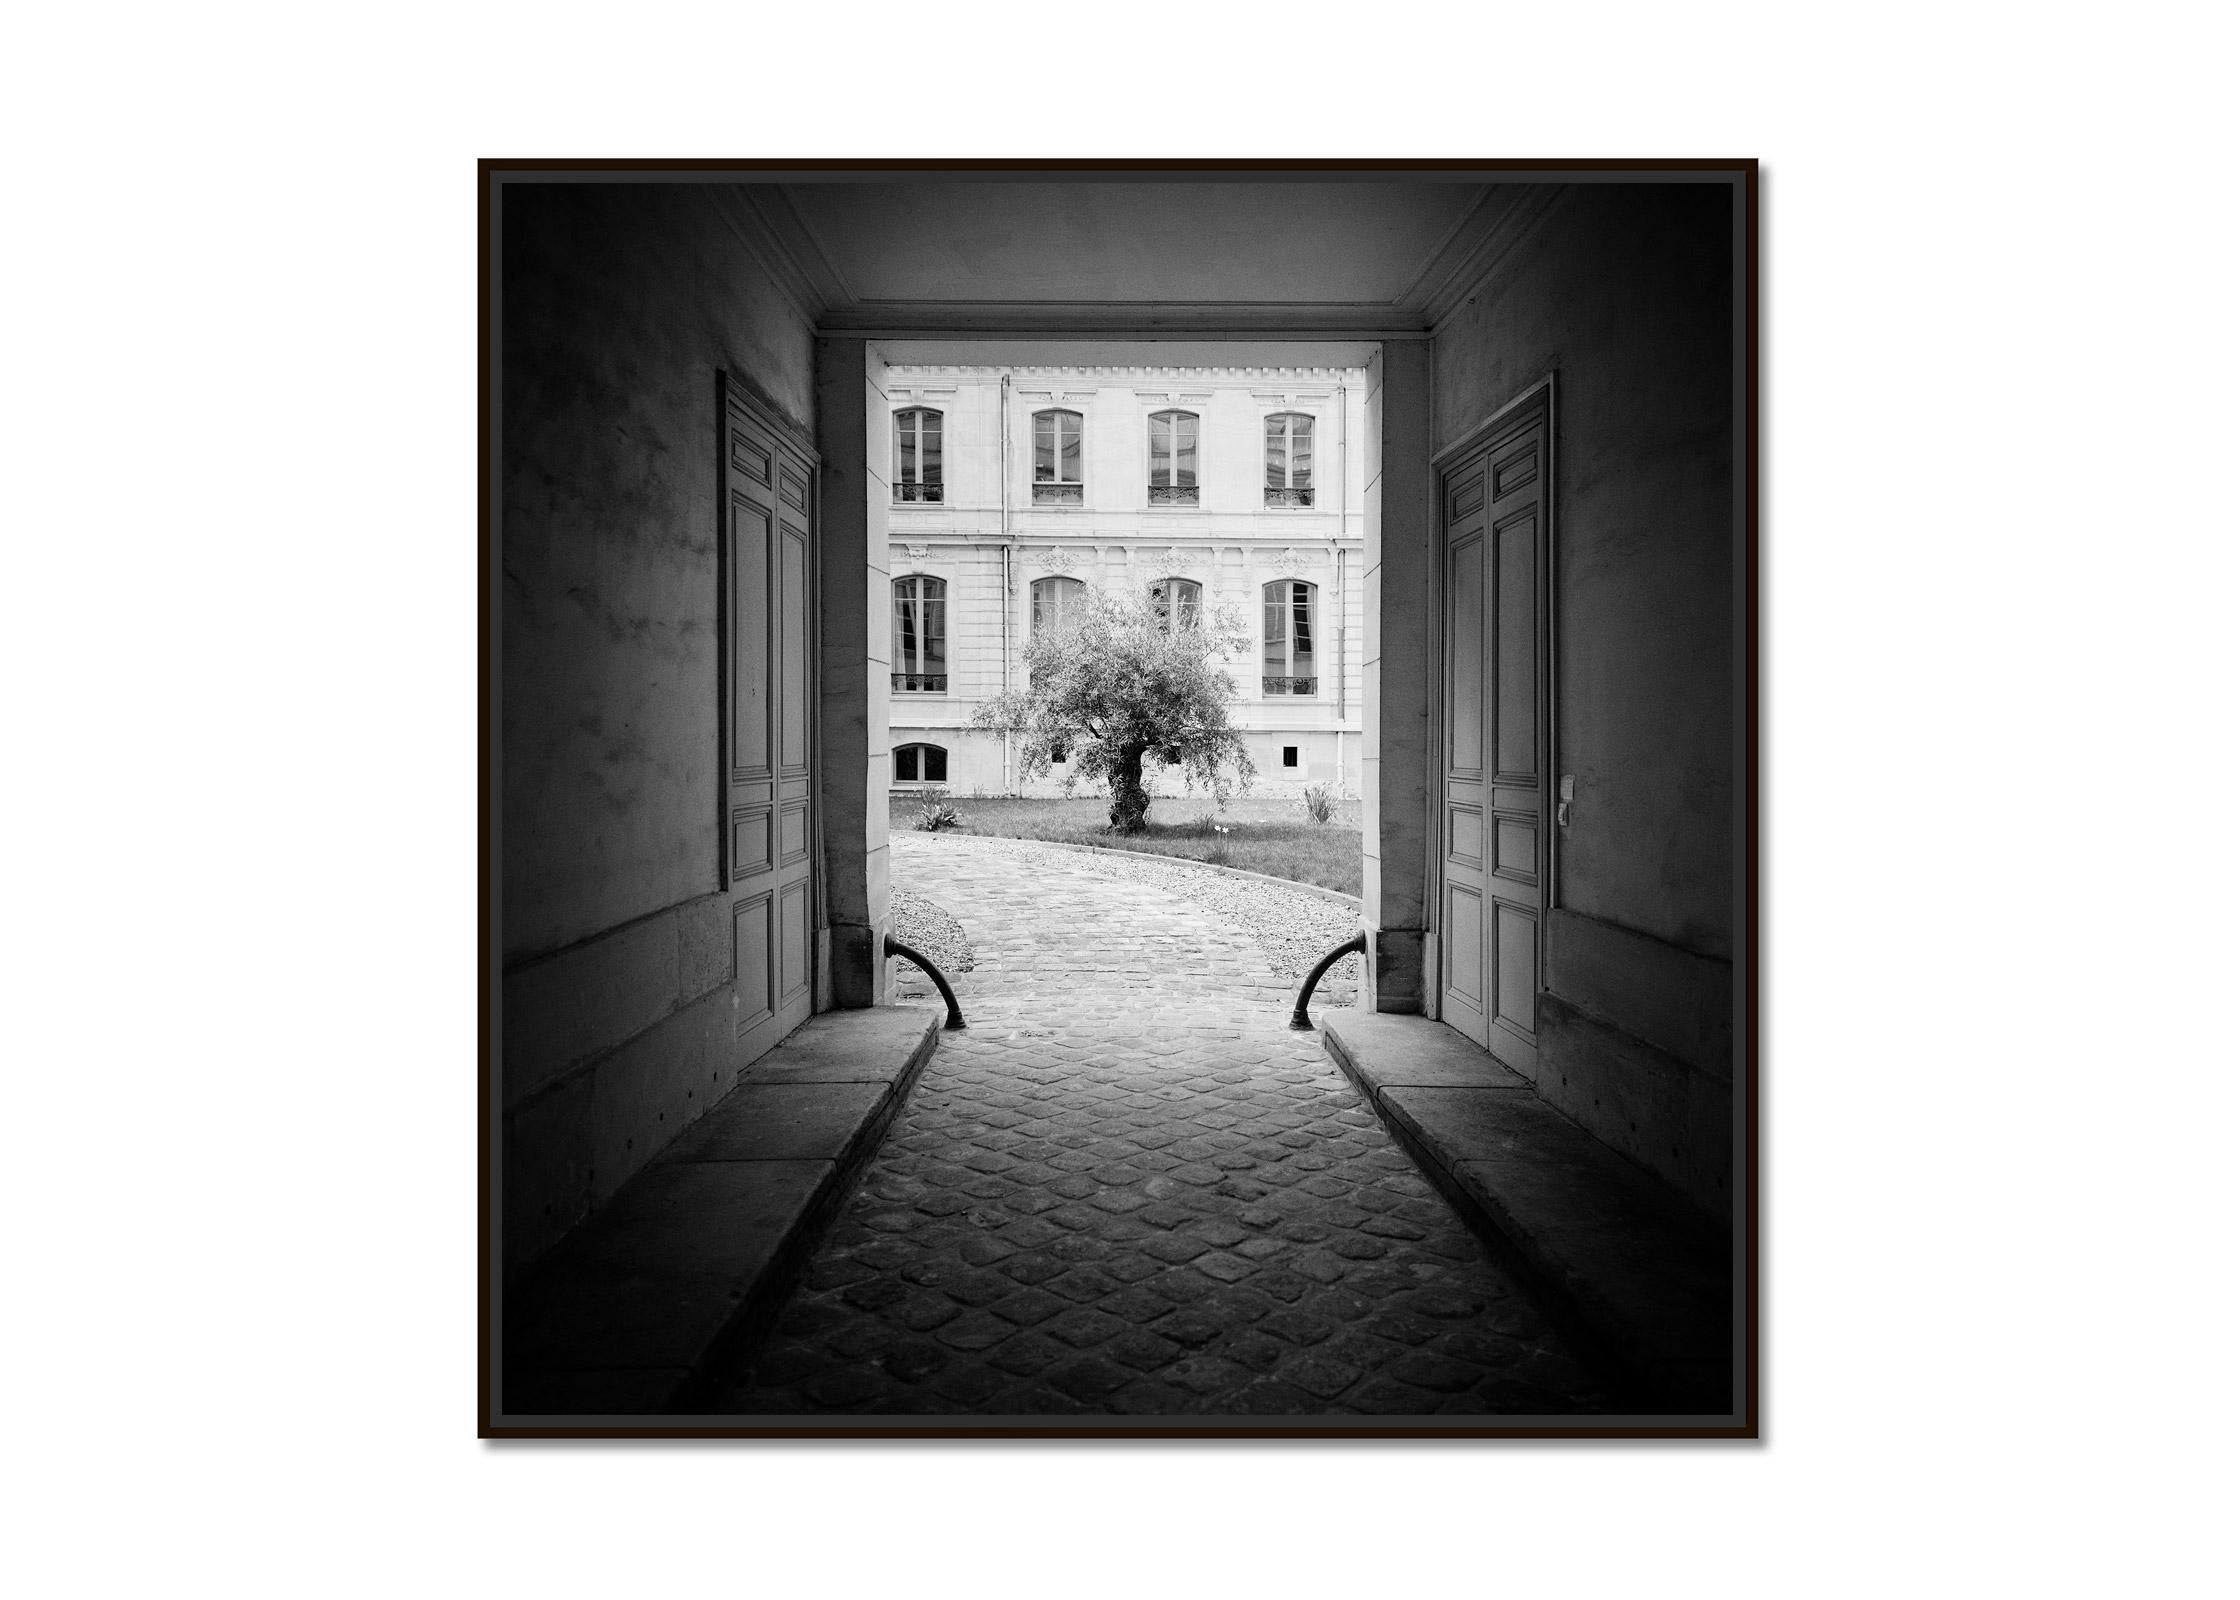 Baum im Garten, Paris, Frankreich, Schwarz-Weiß-Fotografie der bildenden Kunst – Photograph von Gerald Berghammer